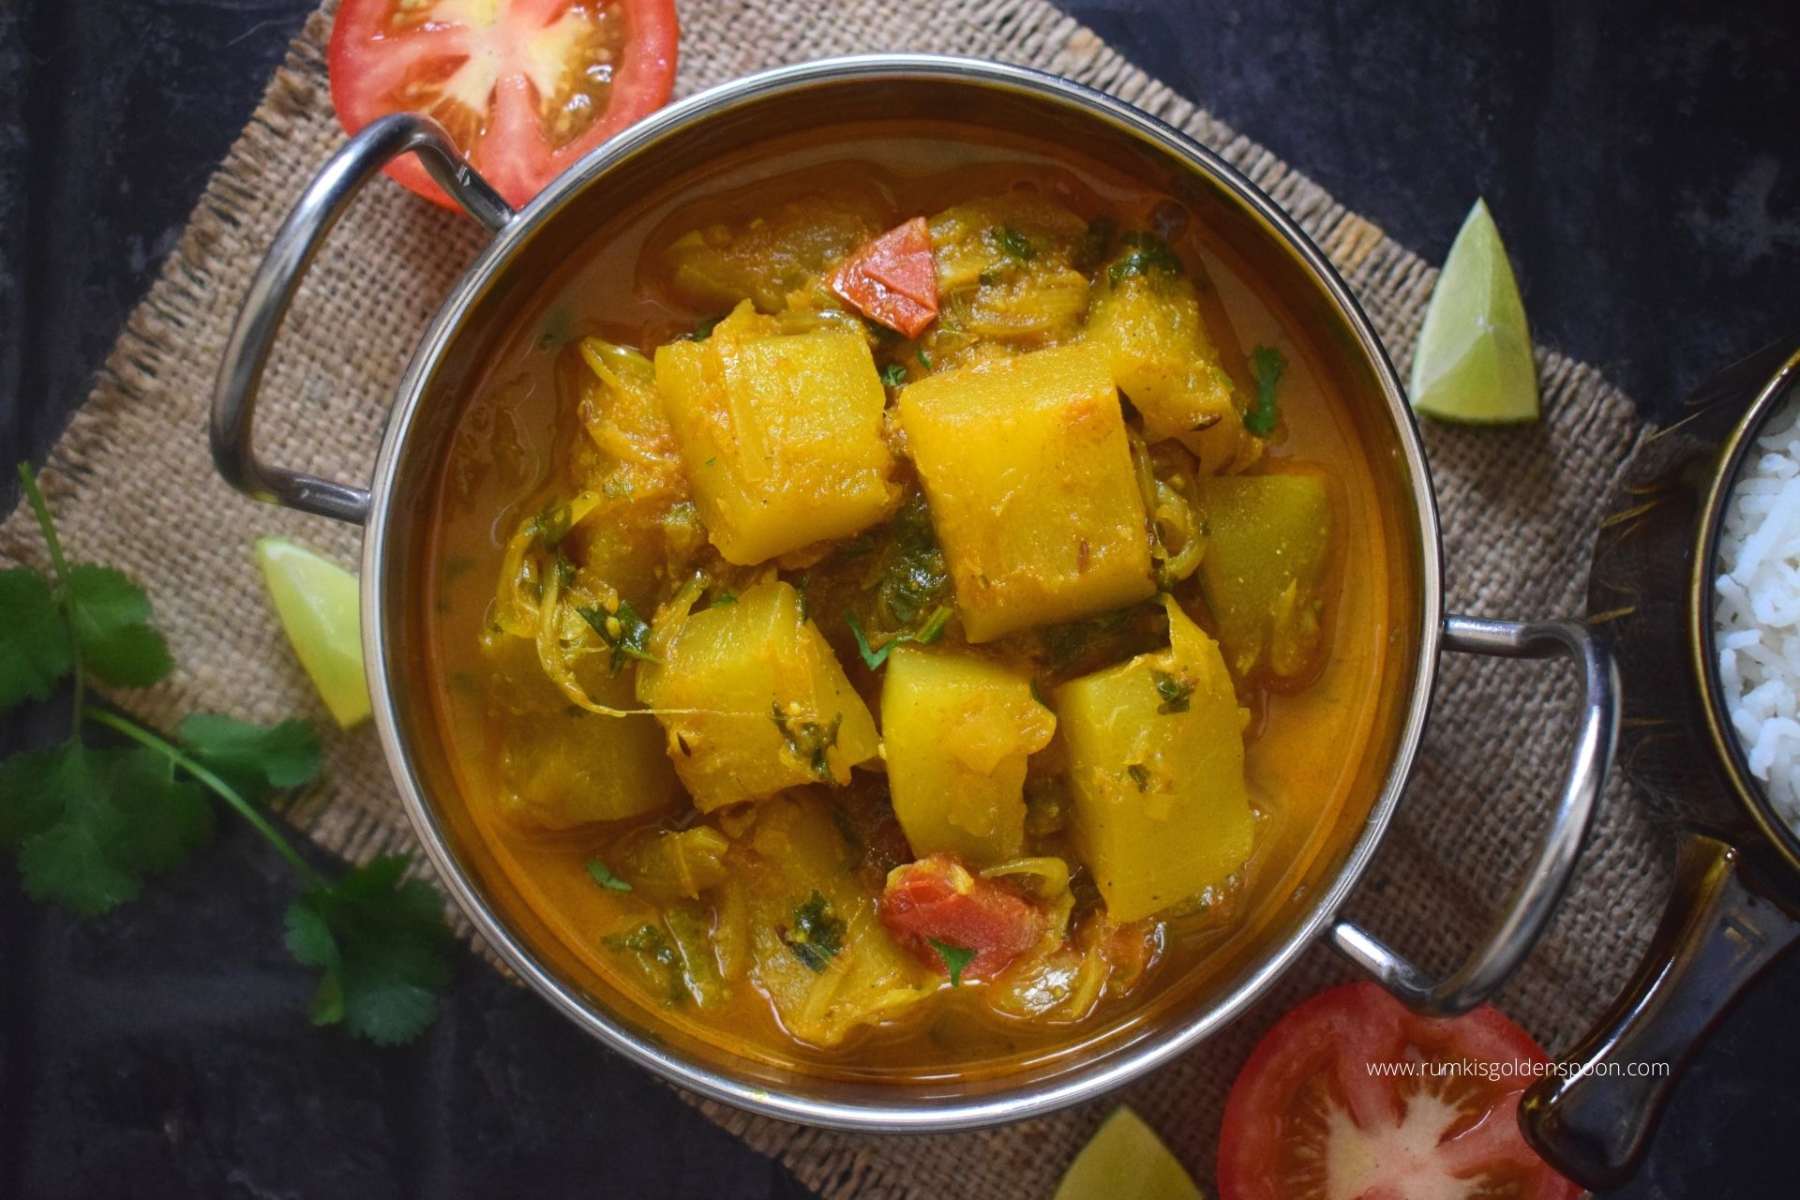 Vegetarian Marrow Recipes, Marrow Fry, marrow recipes, marrow curry, Vegetable Curry, Rumki's Golden Spoon